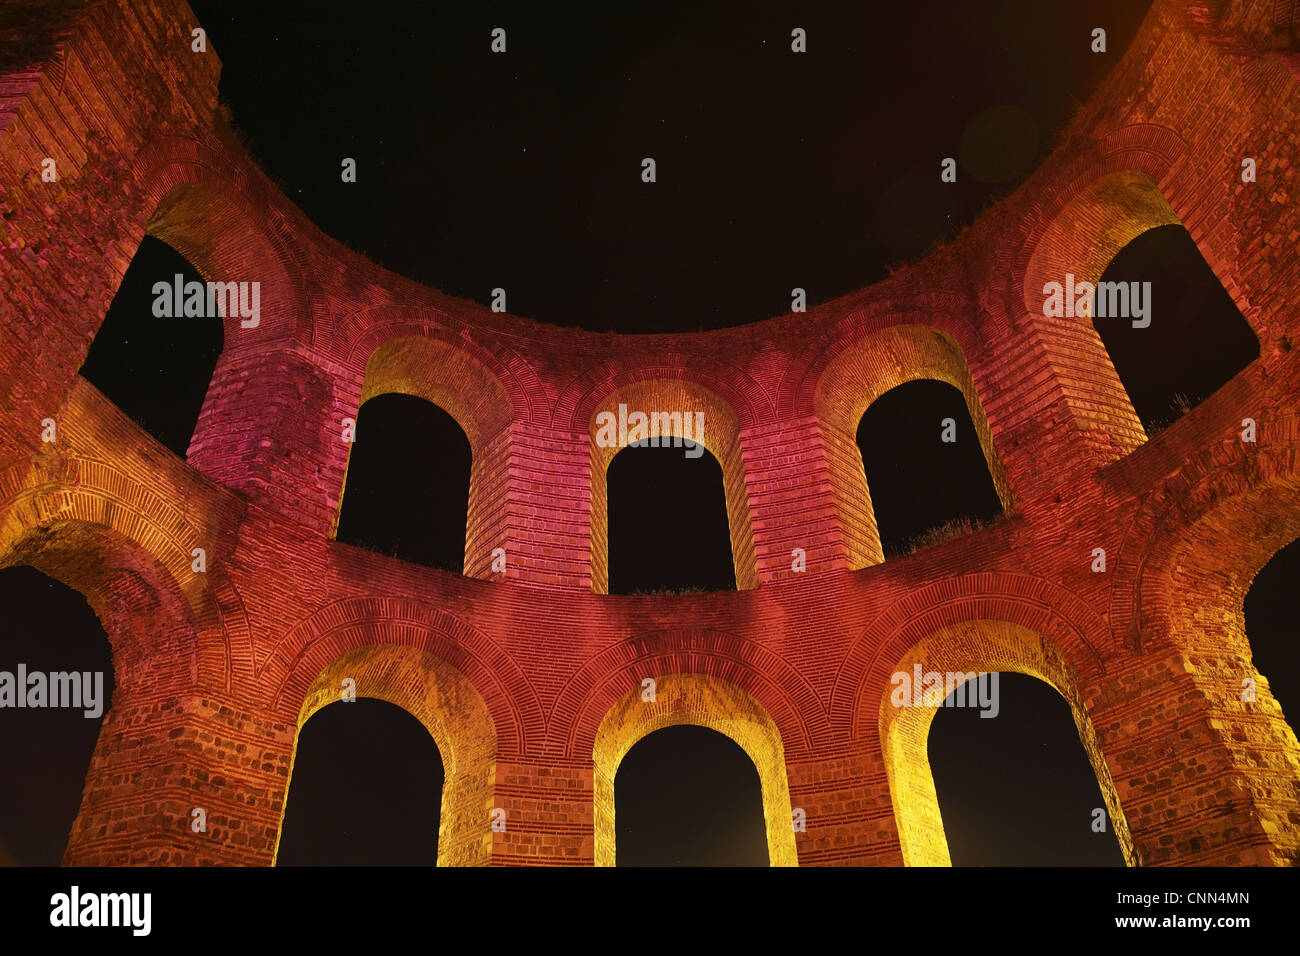 Ruines de thermes romains éclairés la nuit, Kaiserthermen (Imperial Baths), Trèves, Rhénanie-Palatinat, Allemagne, Août Banque D'Images